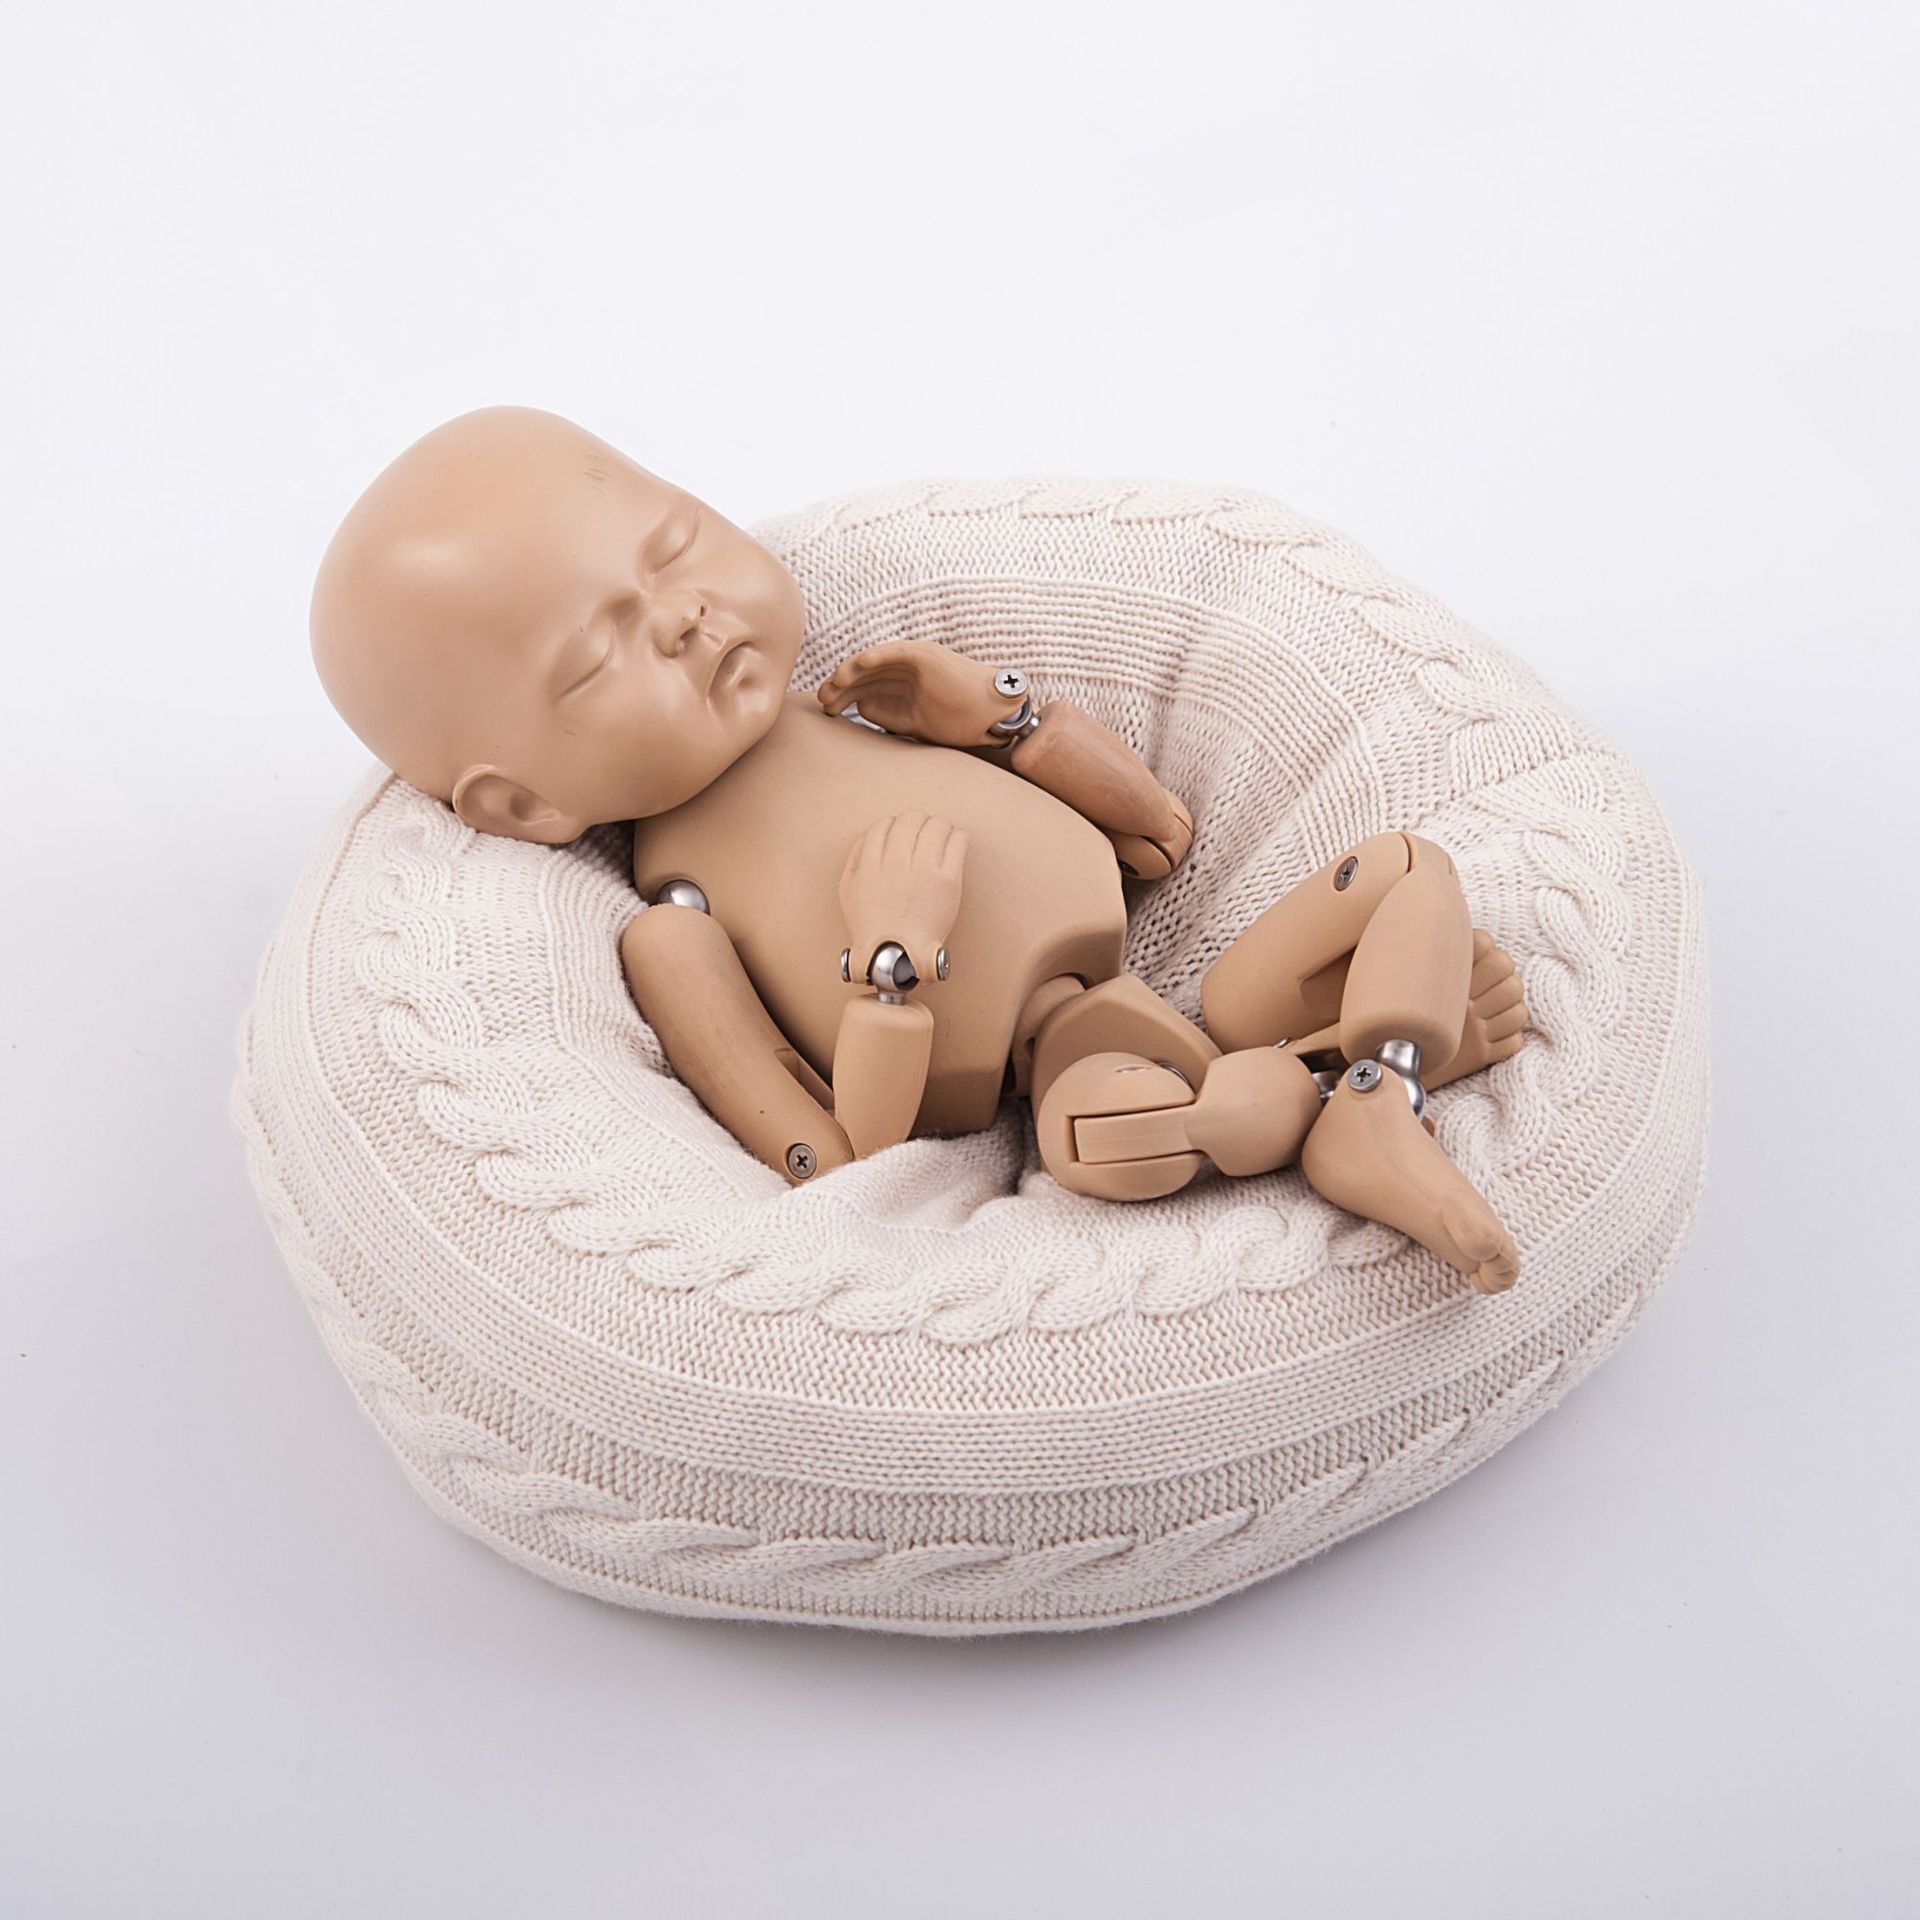 新生儿摄影道具沙发造型垫影楼宝宝拍照辅助小沙发婴儿拍摄写真枕